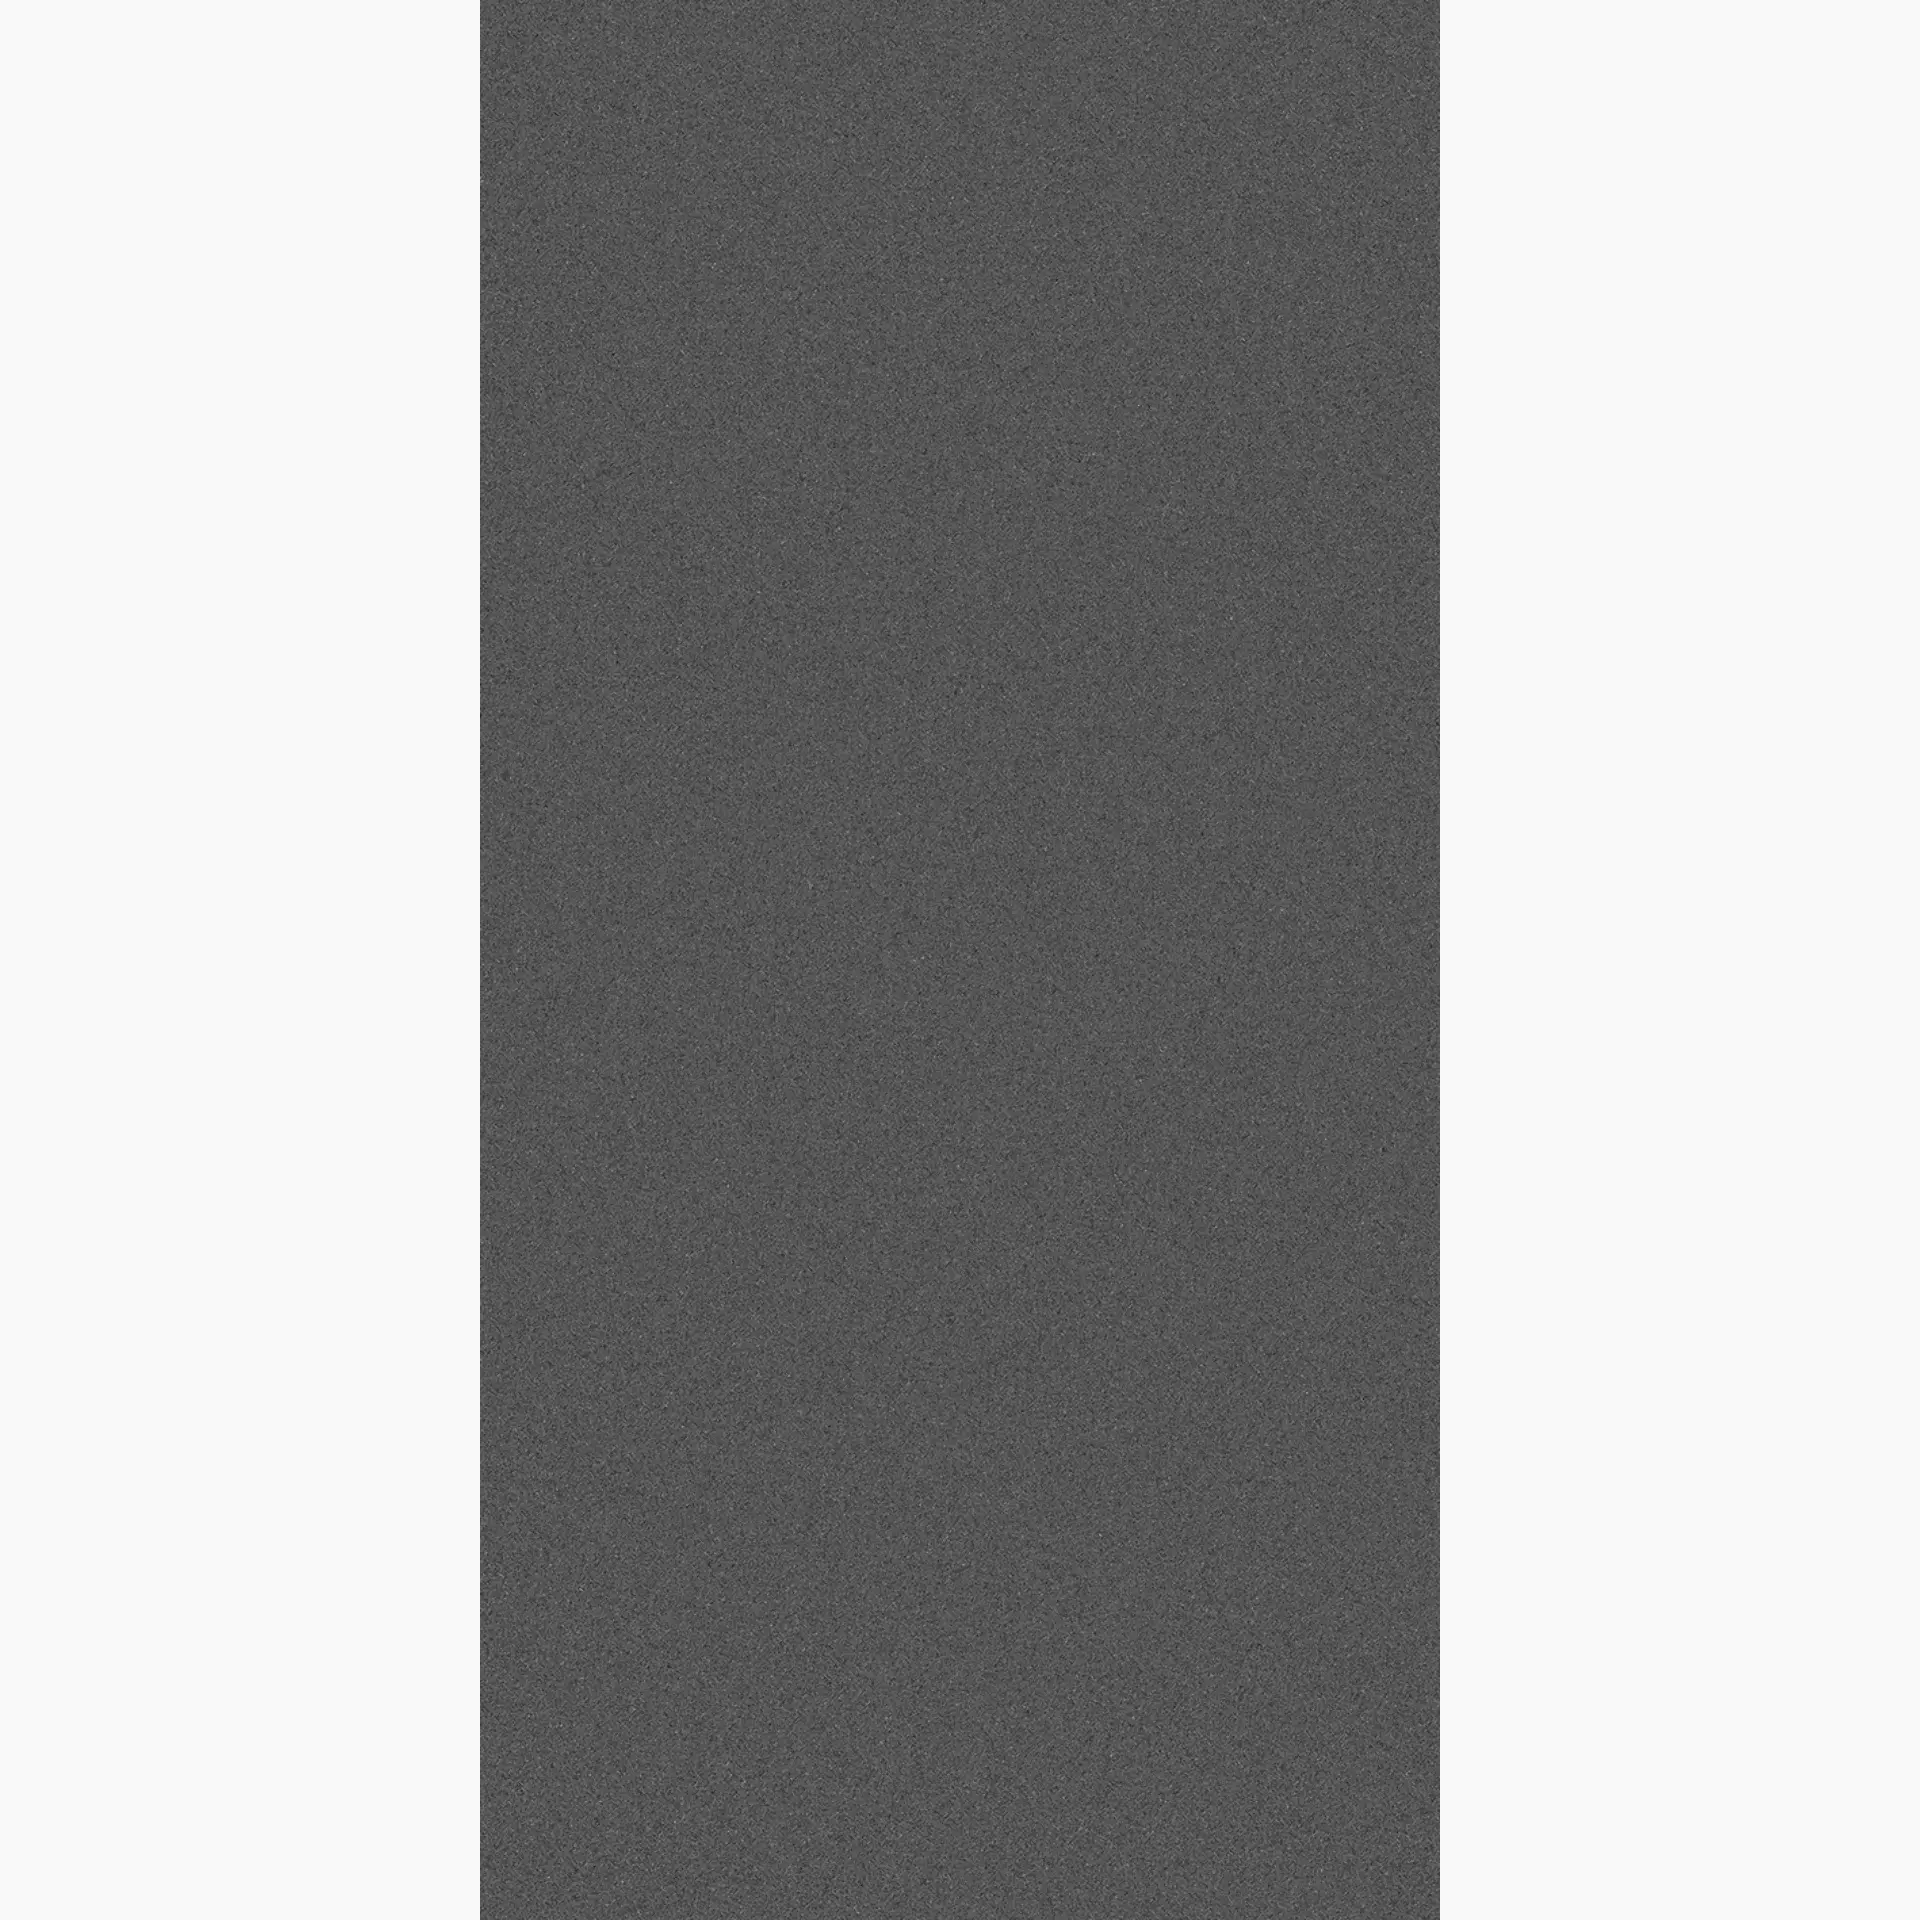 Wandfliese,Bodenfliese Villeroy & Boch Pure Line 2.0 Asphalt Grey Matt Asphalt Grey 2751-UL90 matt 60x120cm rektifiziert 12mm